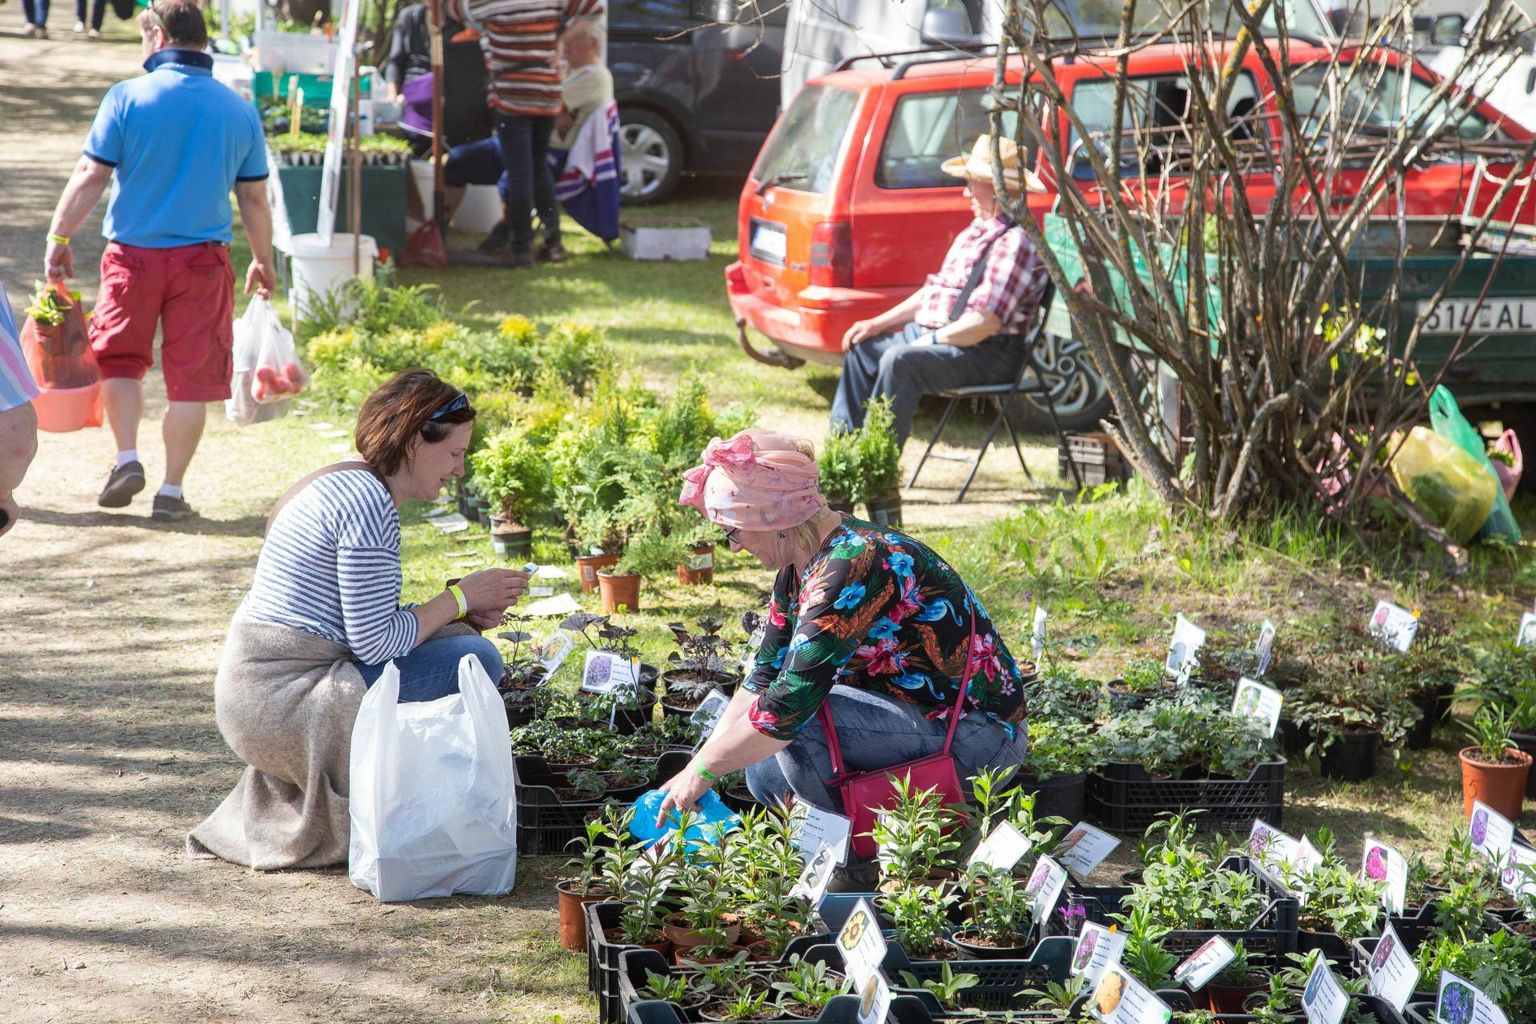 Üle mitme aasta on aiapidajatel taas võimalus Türi lillelaadalt taimi ja istikuid osta ning kevadpealinna laadamelu nautida.